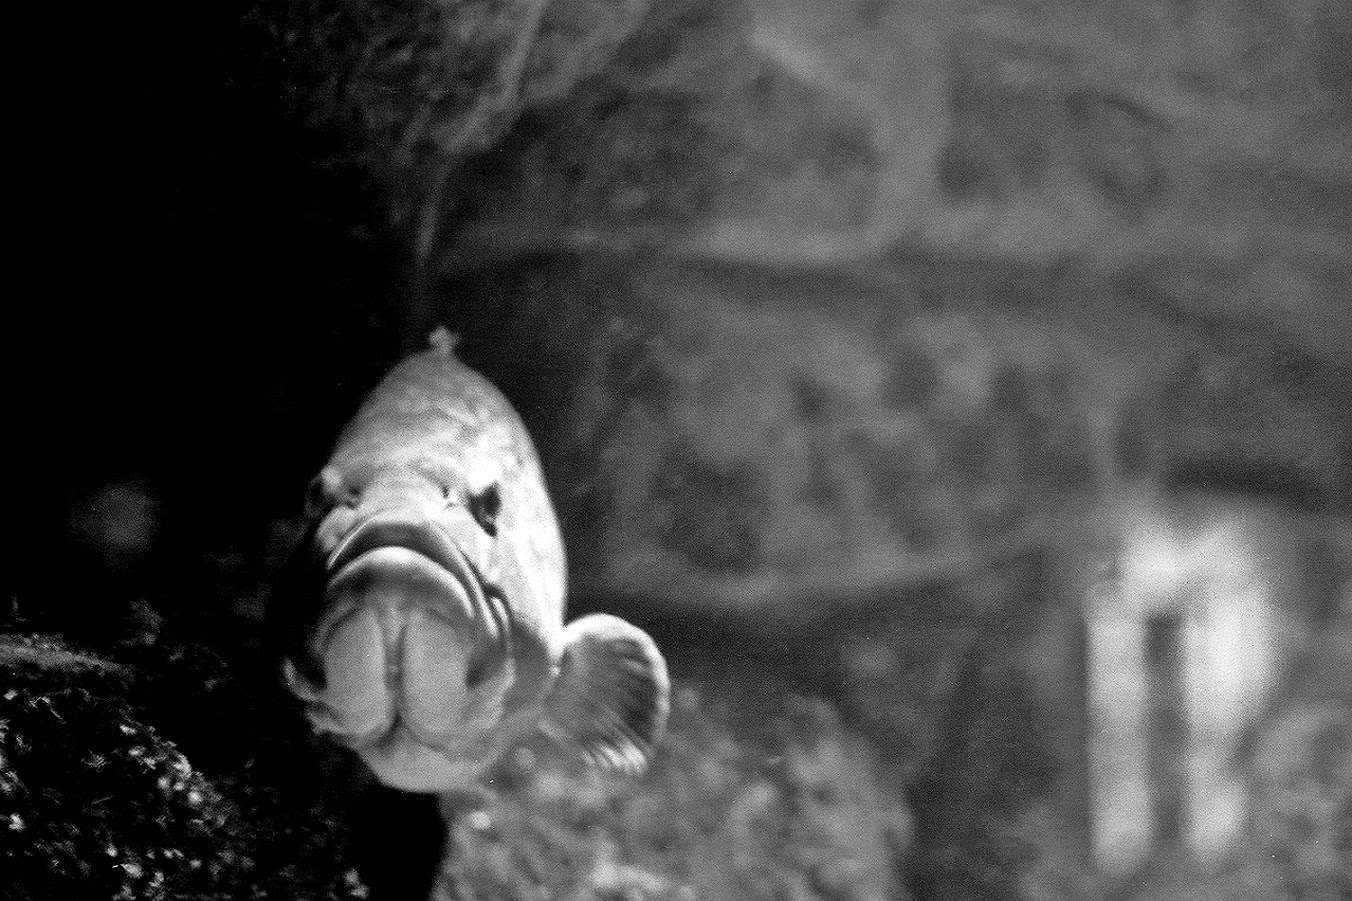 Στον μαγικό κόσμο του Ενυδρείου Κρήτης. Ο φωτογράφος ΓΙΑΝΝΗΣ ΟΙΚΟΝΟΜΟΥ φωτογραφίζει θαλασσόκοσμους.